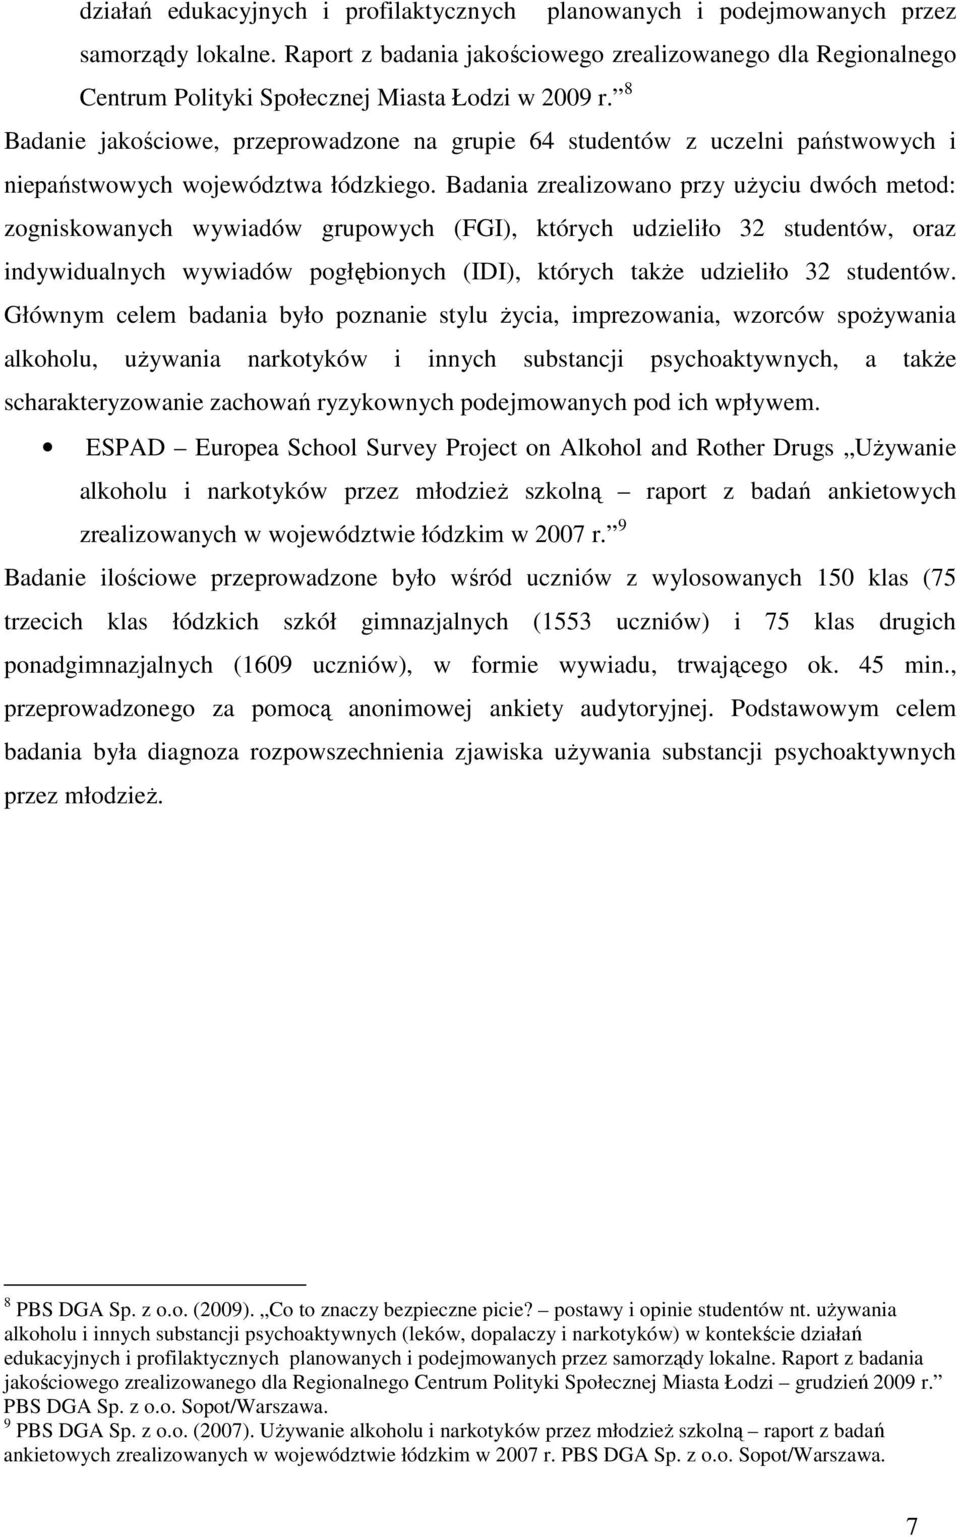 8 Badanie jakościowe, przeprowadzone na grupie 64 studentów z uczelni państwowych i niepaństwowych województwa łódzkiego.